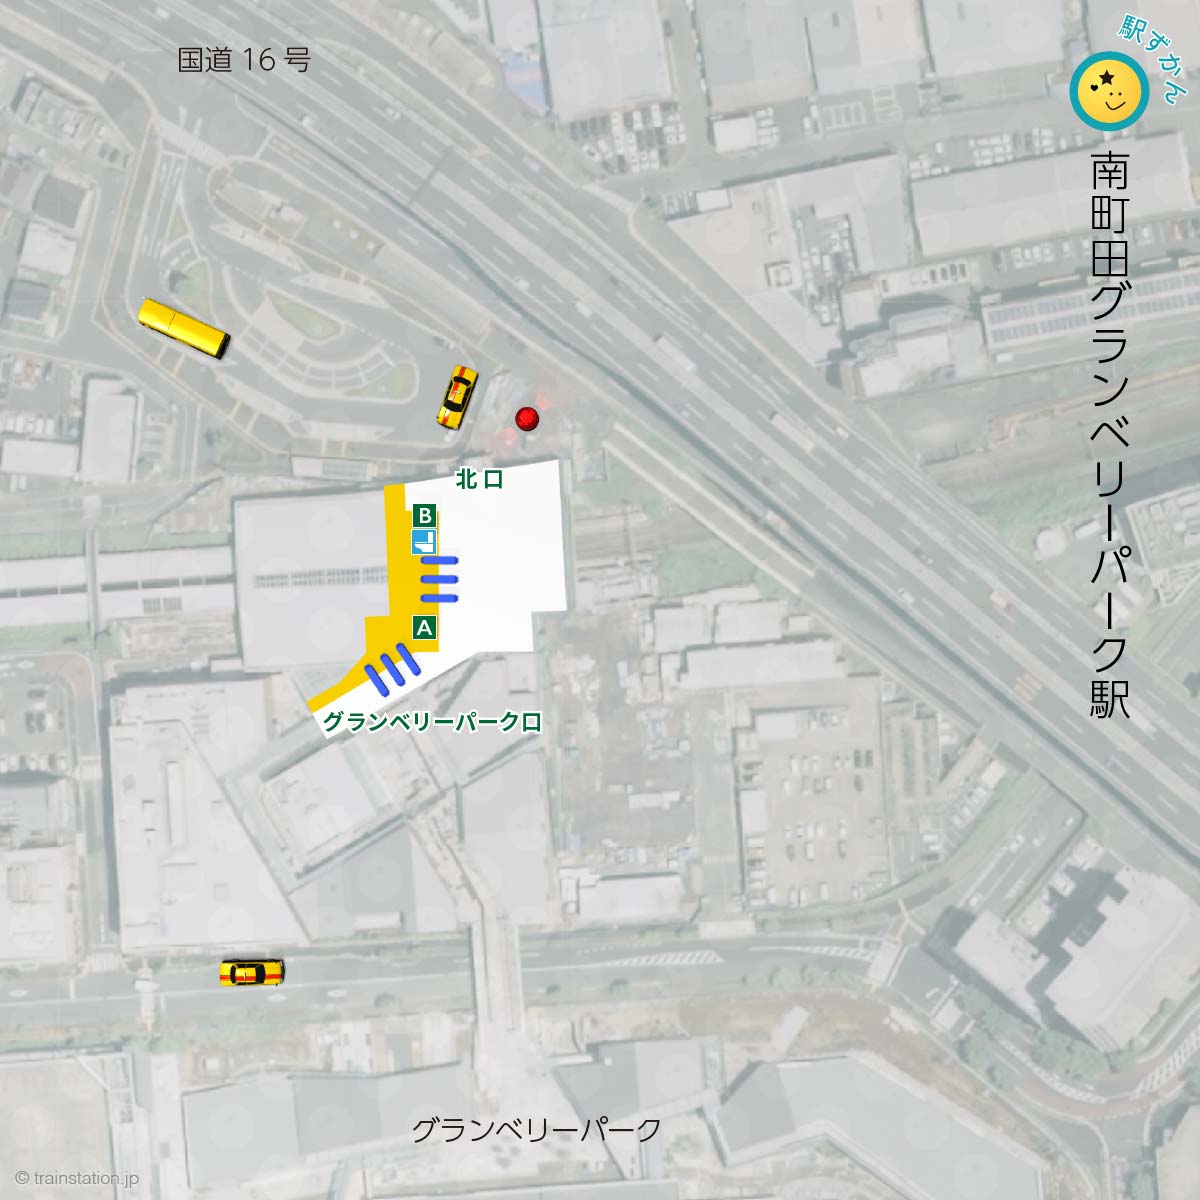 南町田グランベリーパーク駅構内図と周辺マップ